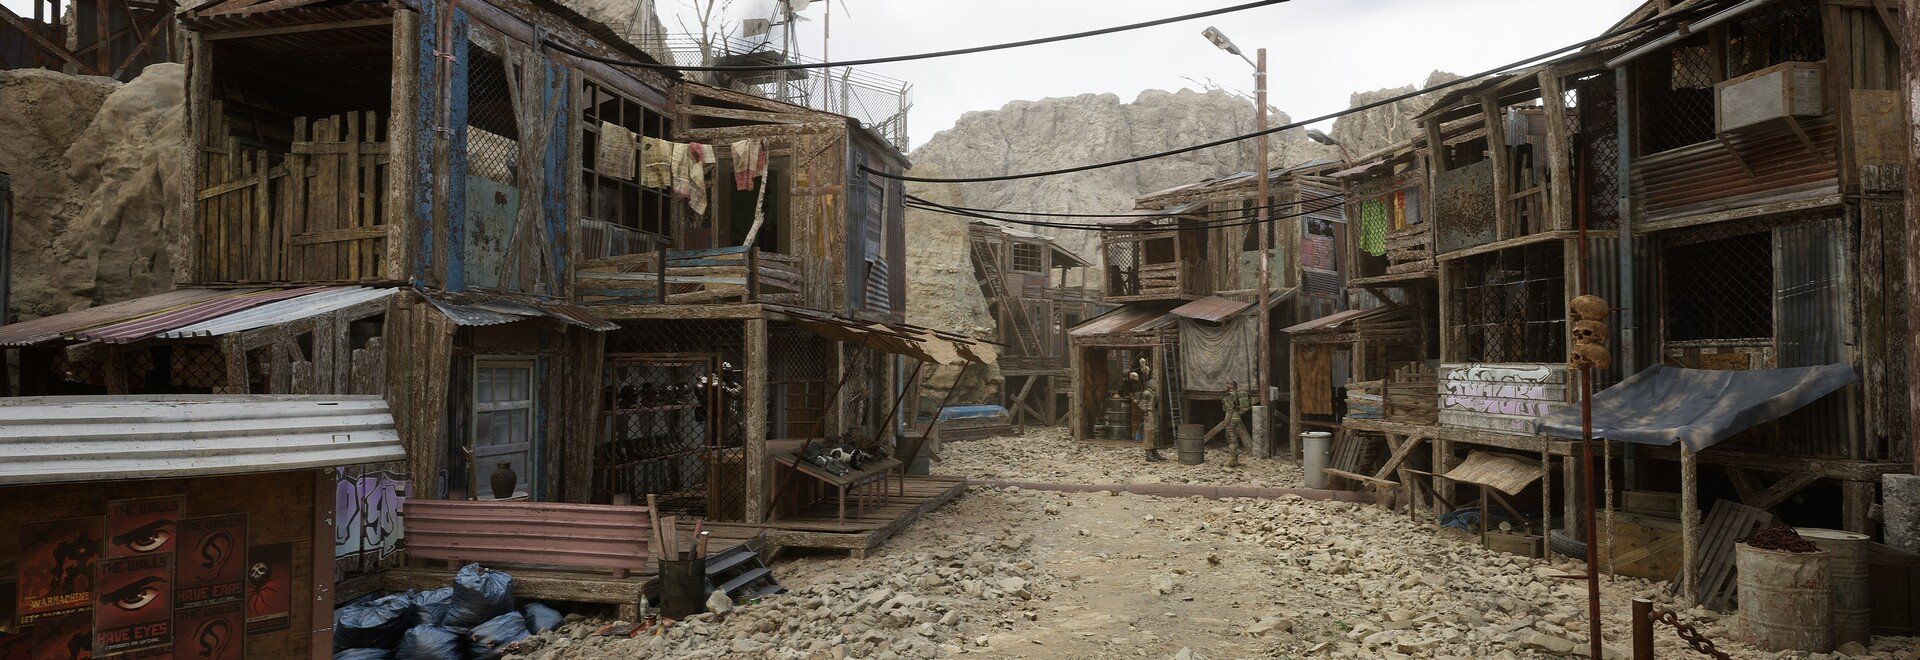 Fallout 4 спектакль айленд вы пока не можете использовать эту мастерскую фото 88